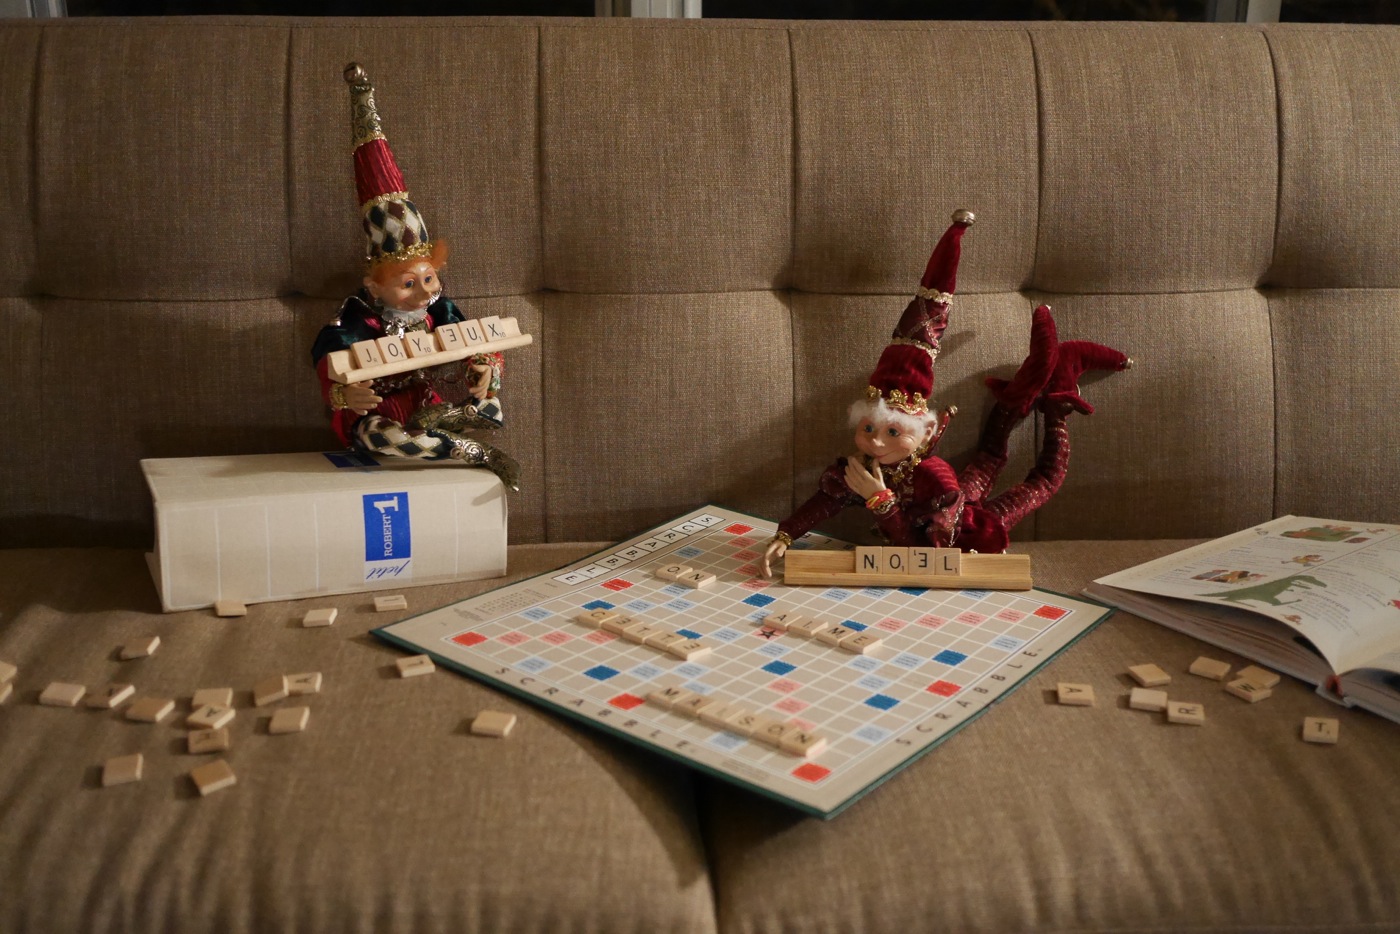 Nous ont-ils vu jouer au Scrabble jour-là? Le soir, ils ont ressorti le jeu, et utilisé les lettres pour laisser un message.